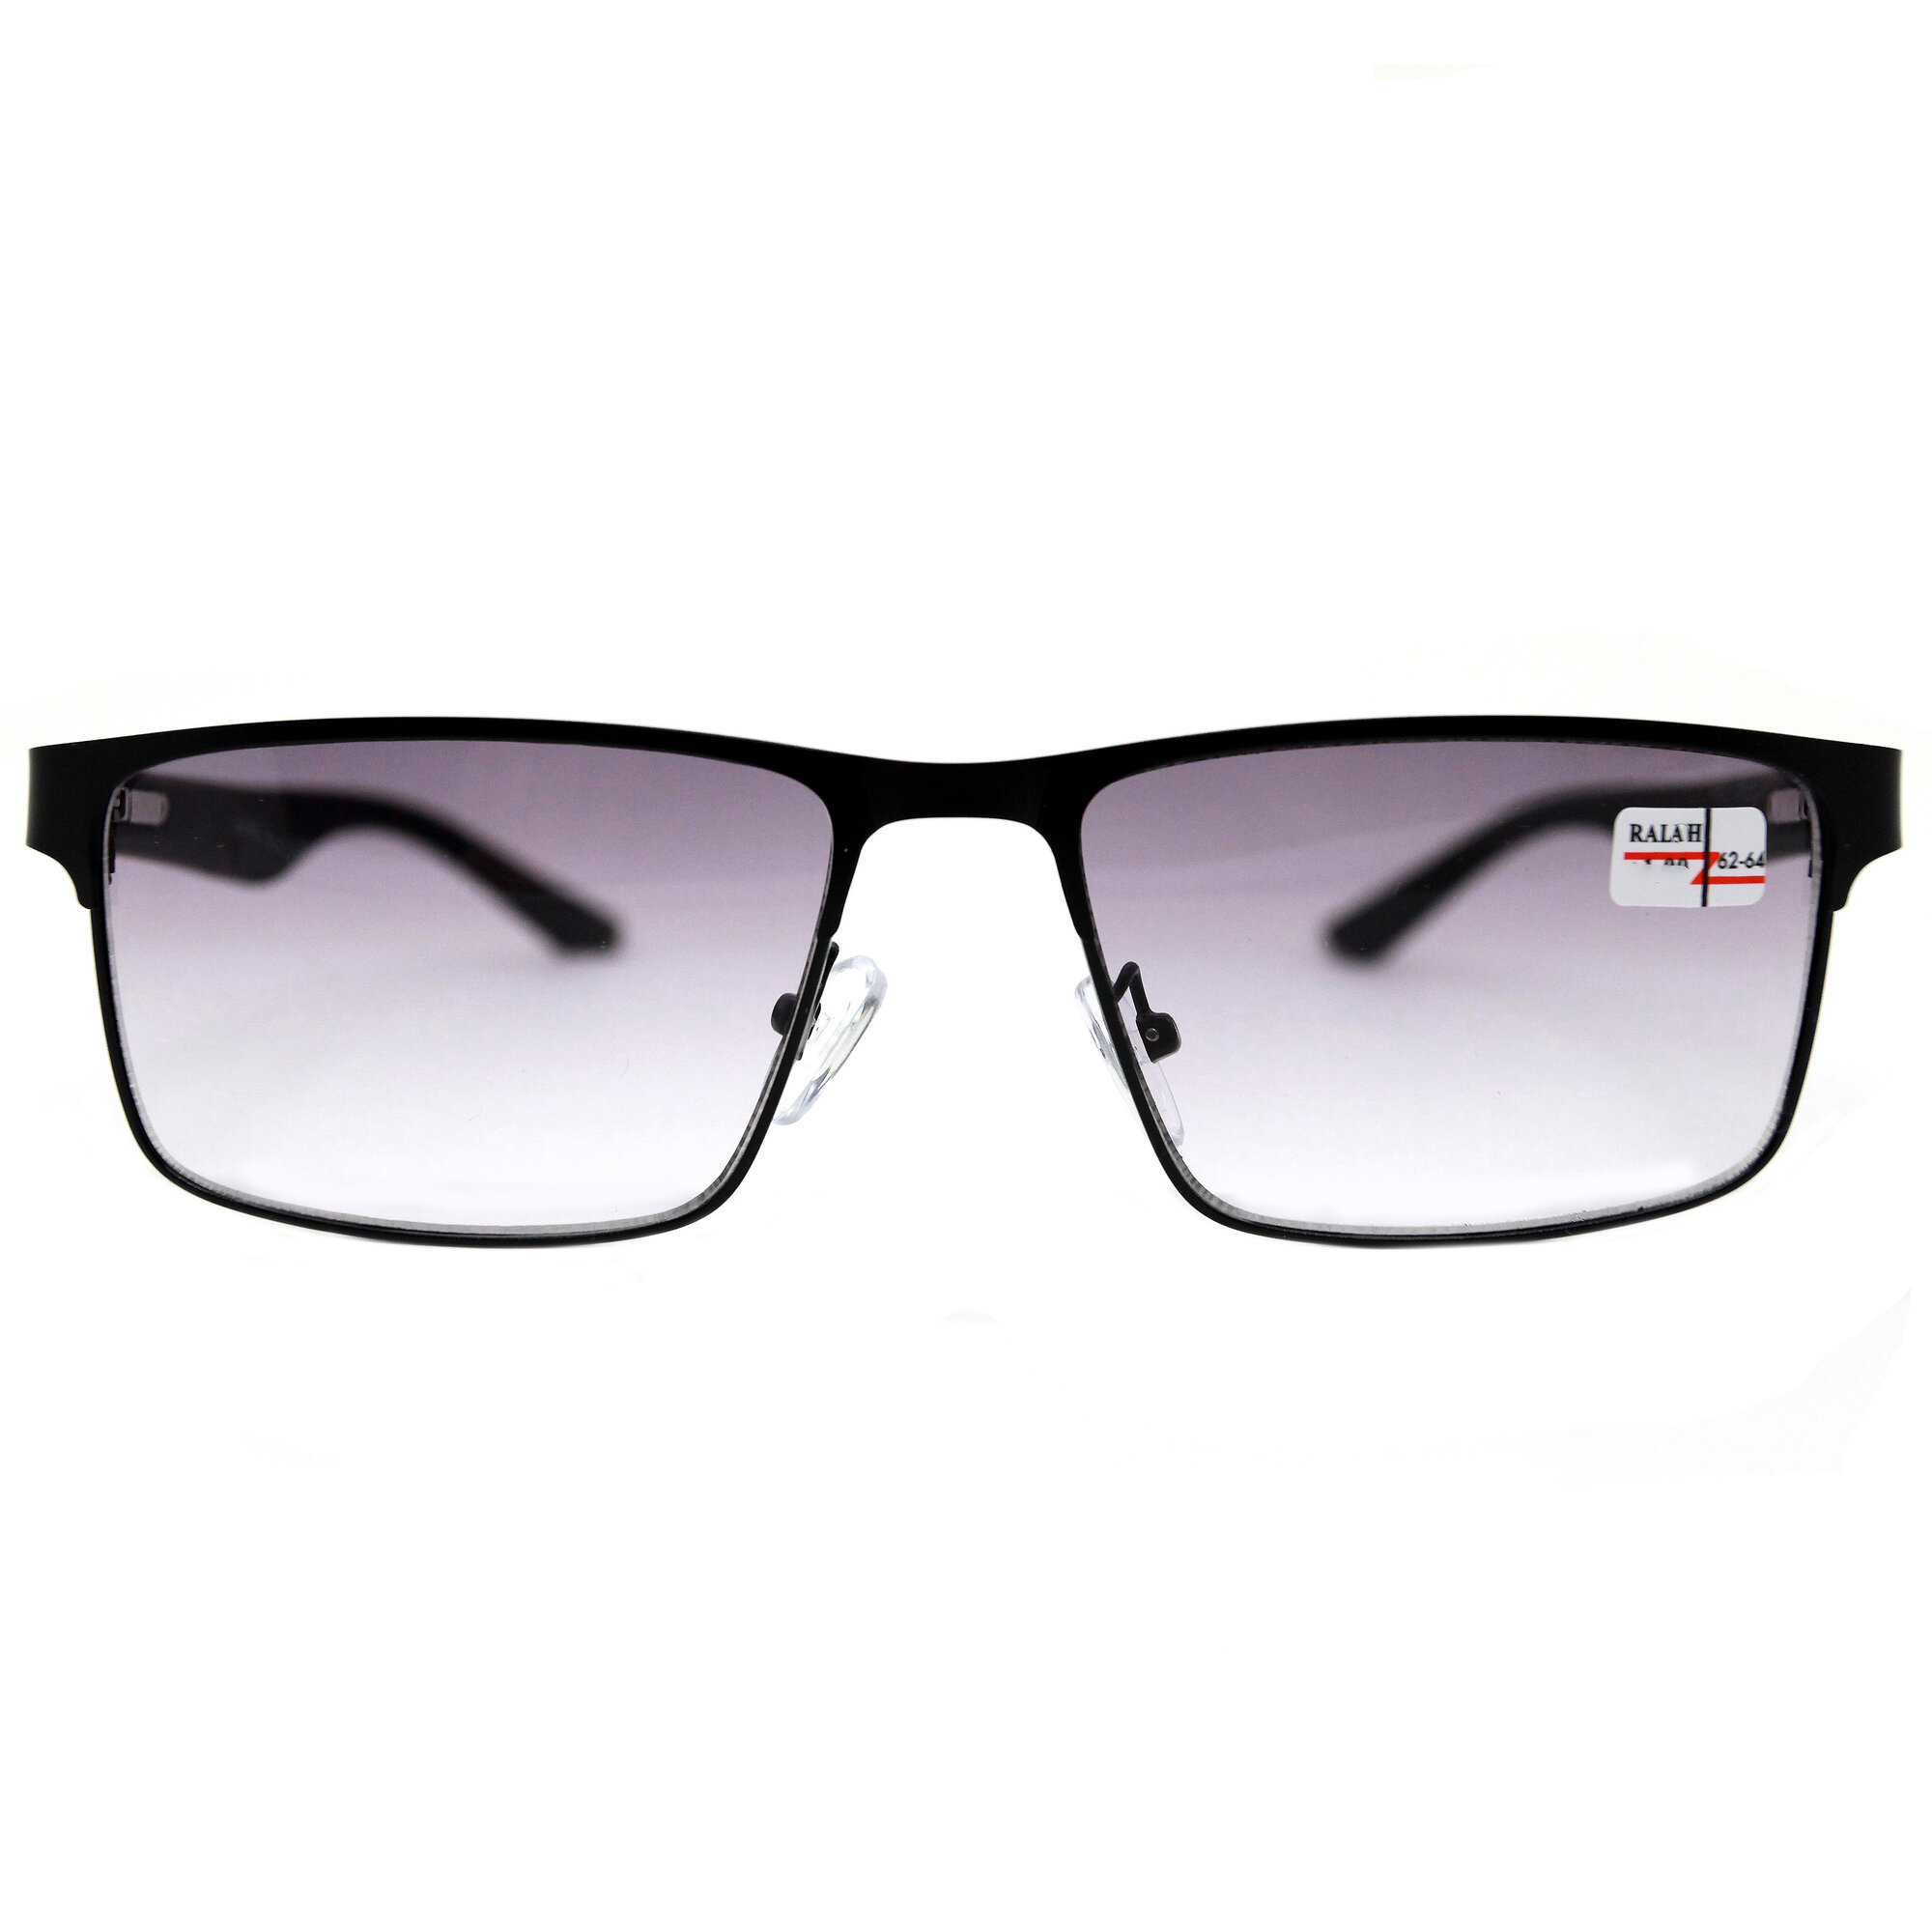 Готовые очки мужские женские для чтения с тонировкой и UV защитой (+1.00) Glodiatr 0657 C1 цвет черный тонировка РЦ 62-64